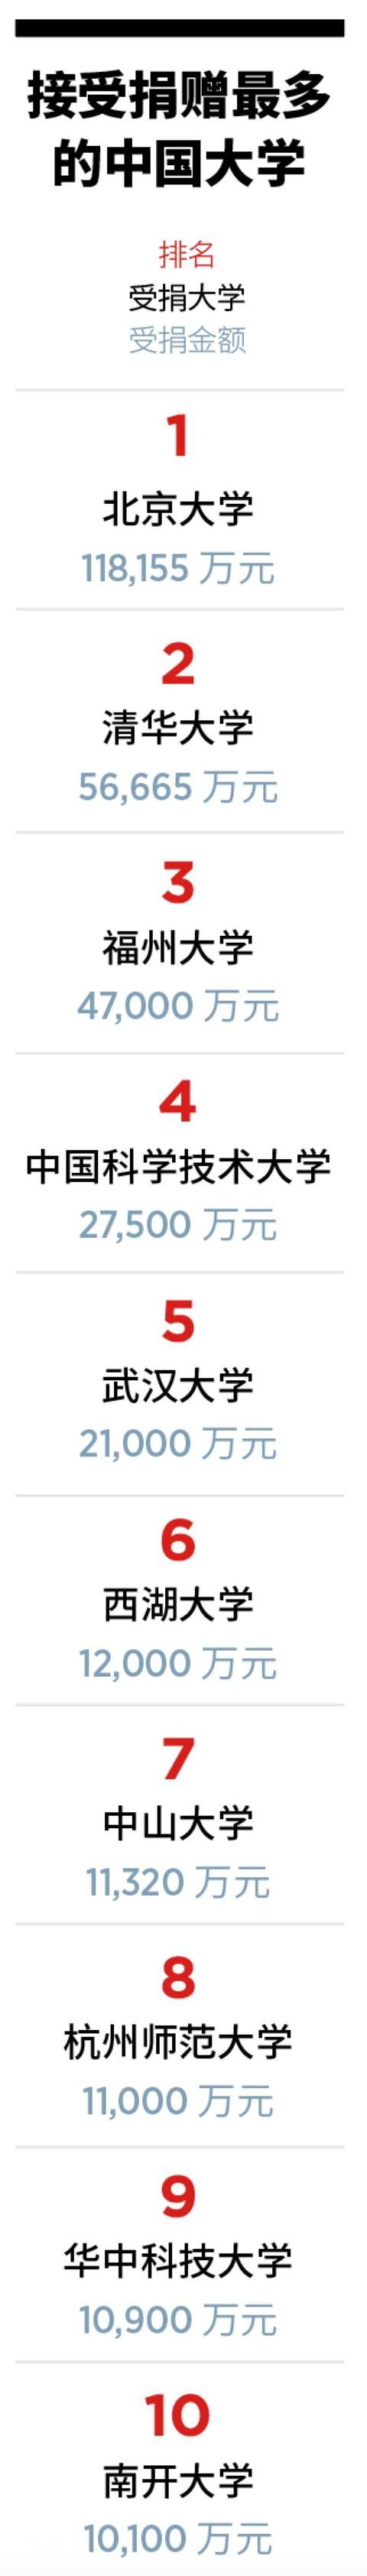 福布斯2019中国慈善榜：这些高校获捐最多-3.jpg